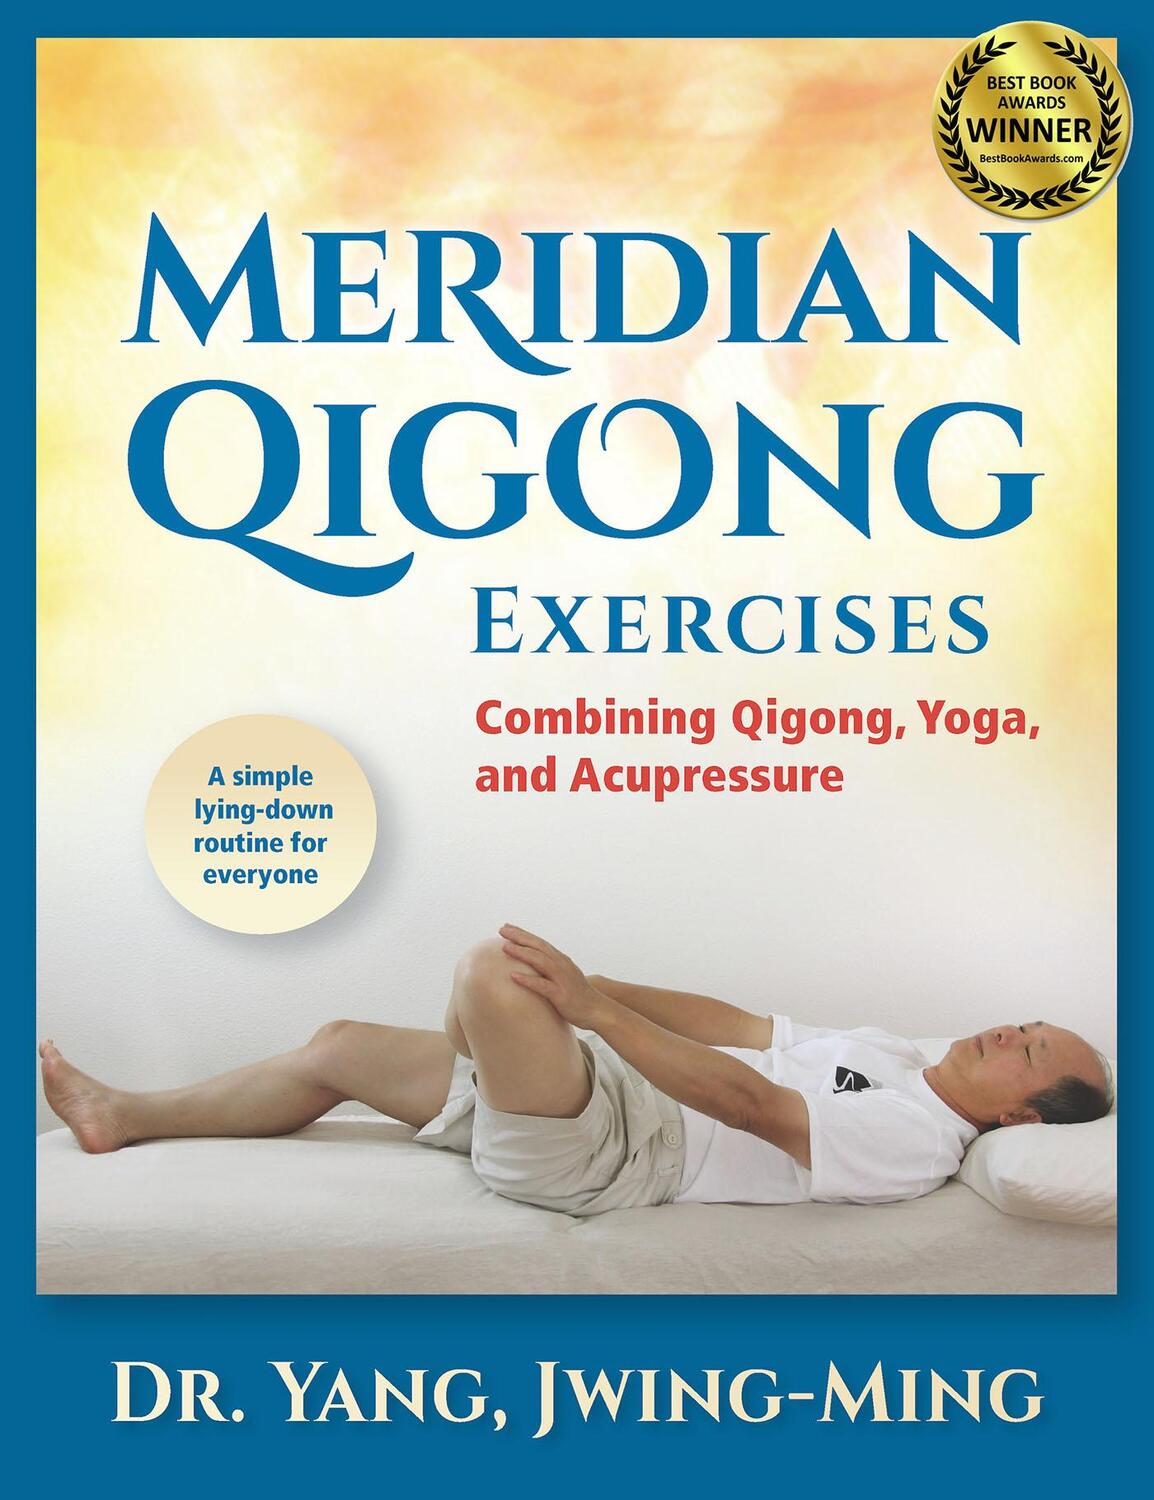 Bild: 9781594394133 | Meridian Qigong Exercises | Combining Qigong, Yoga, & Acupressure